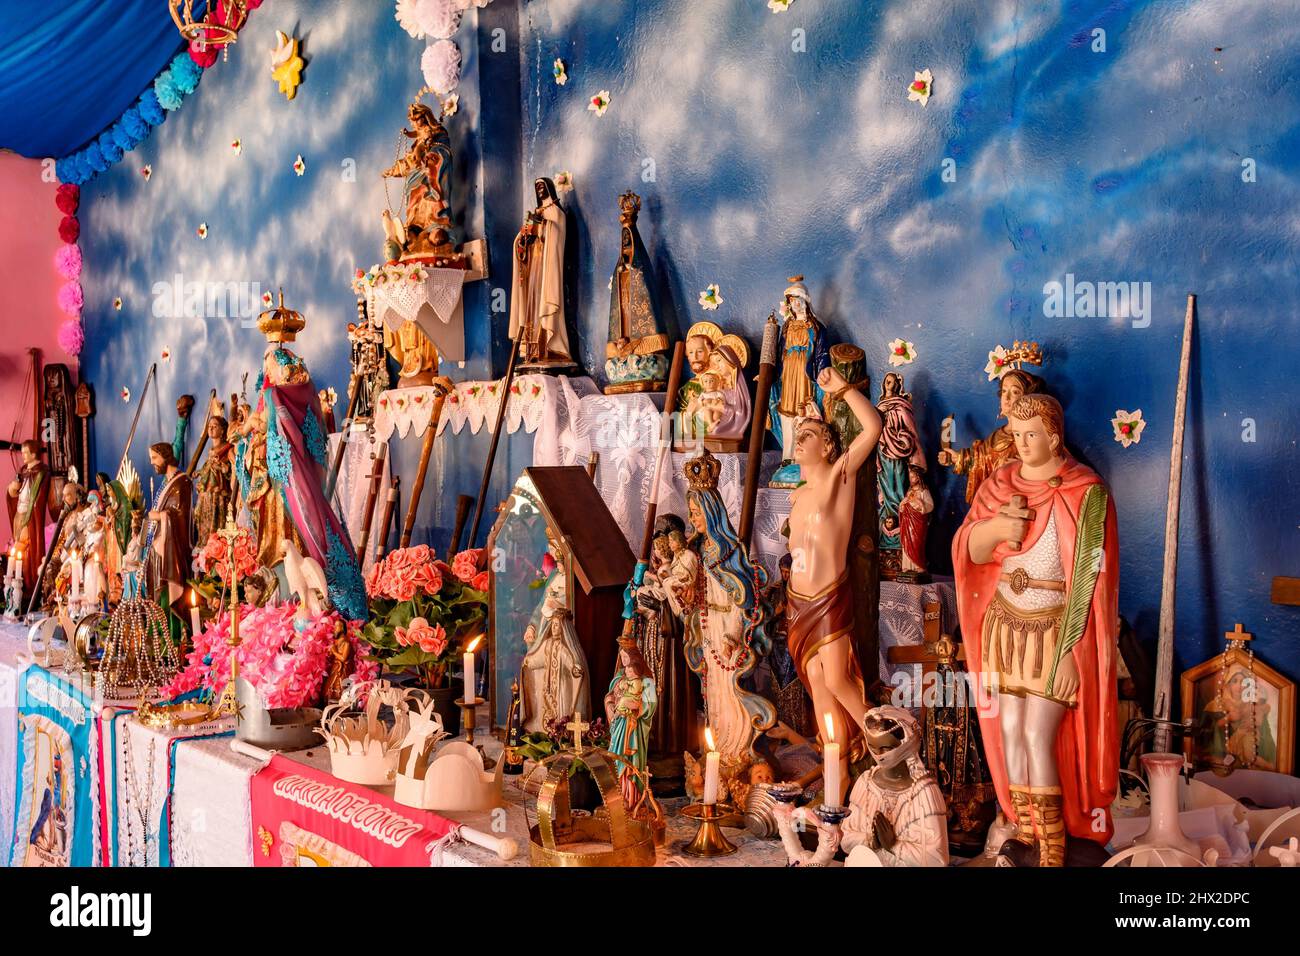 Altare religioso brasiliano che mescola elementi di umbanda, candomblé e cattolicesimo nel sincretismo presente nella cultura e nella religione locale. Foto Stock